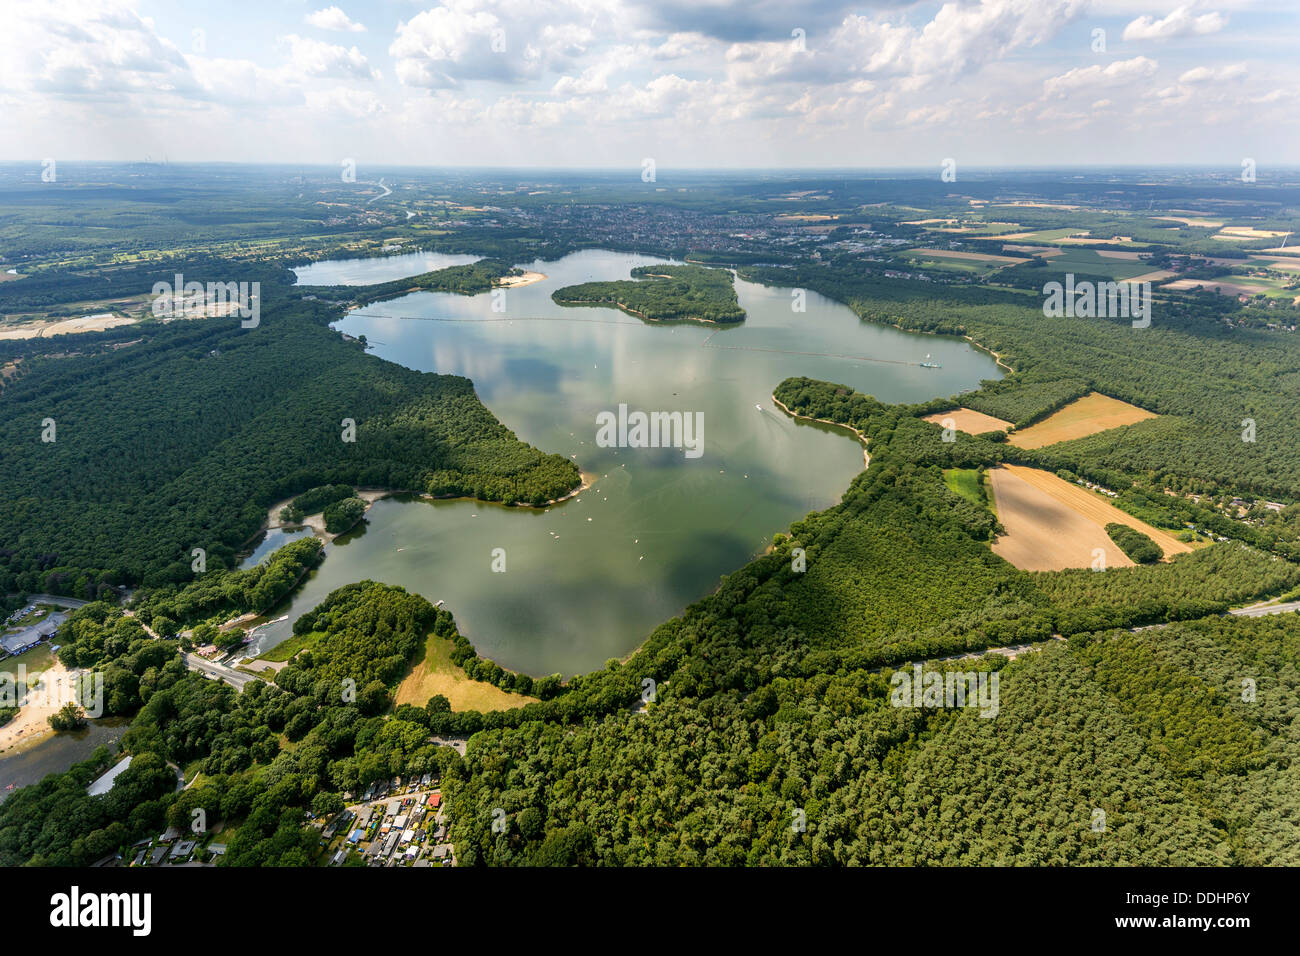 Vista aerea, Halterner serbatoio o lago Haltern Foto Stock